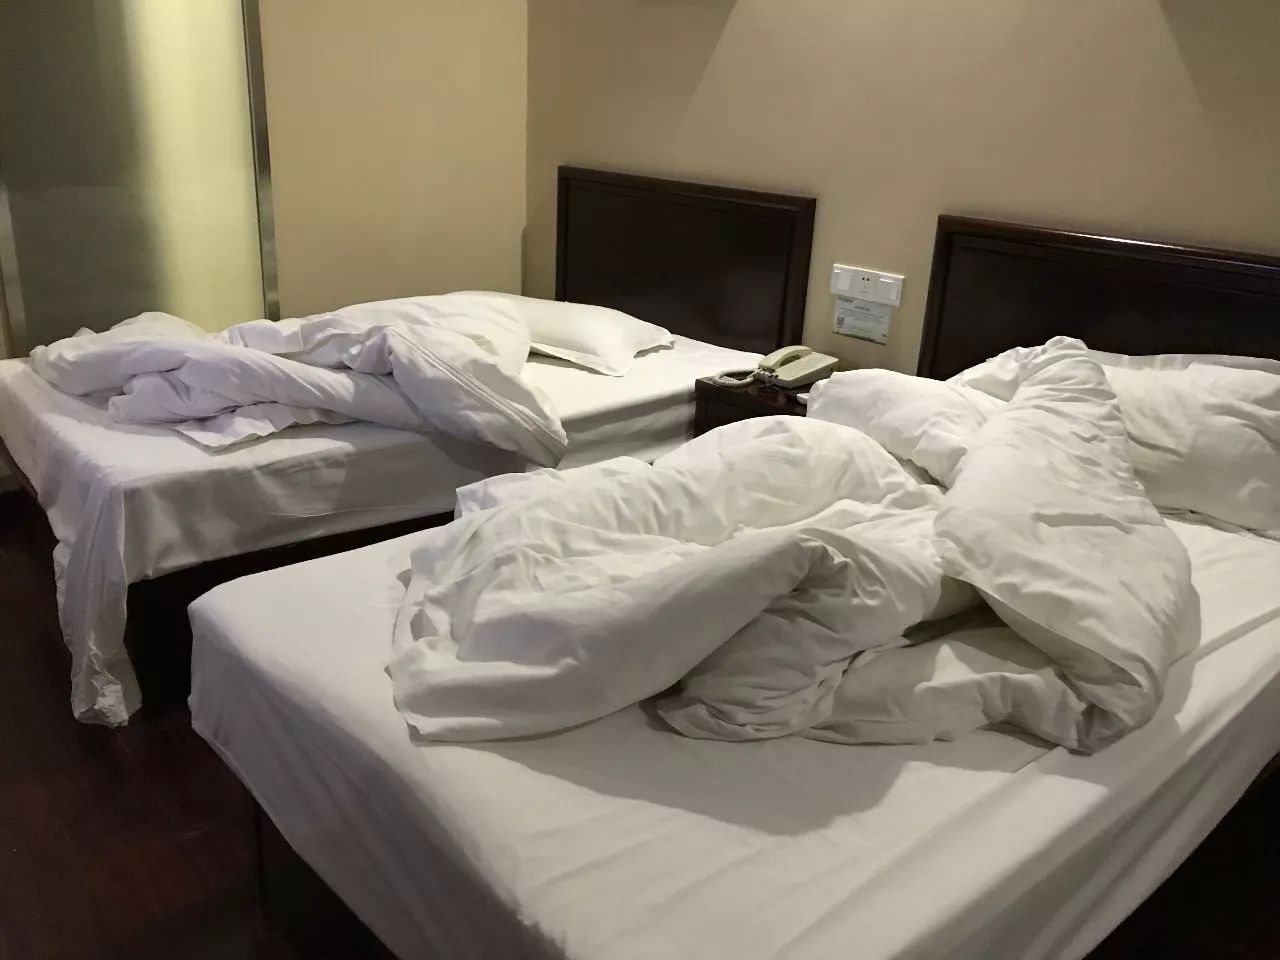 丹阳酒店不换床单?我们对这几家快捷酒店做了评测,结果让人震惊!